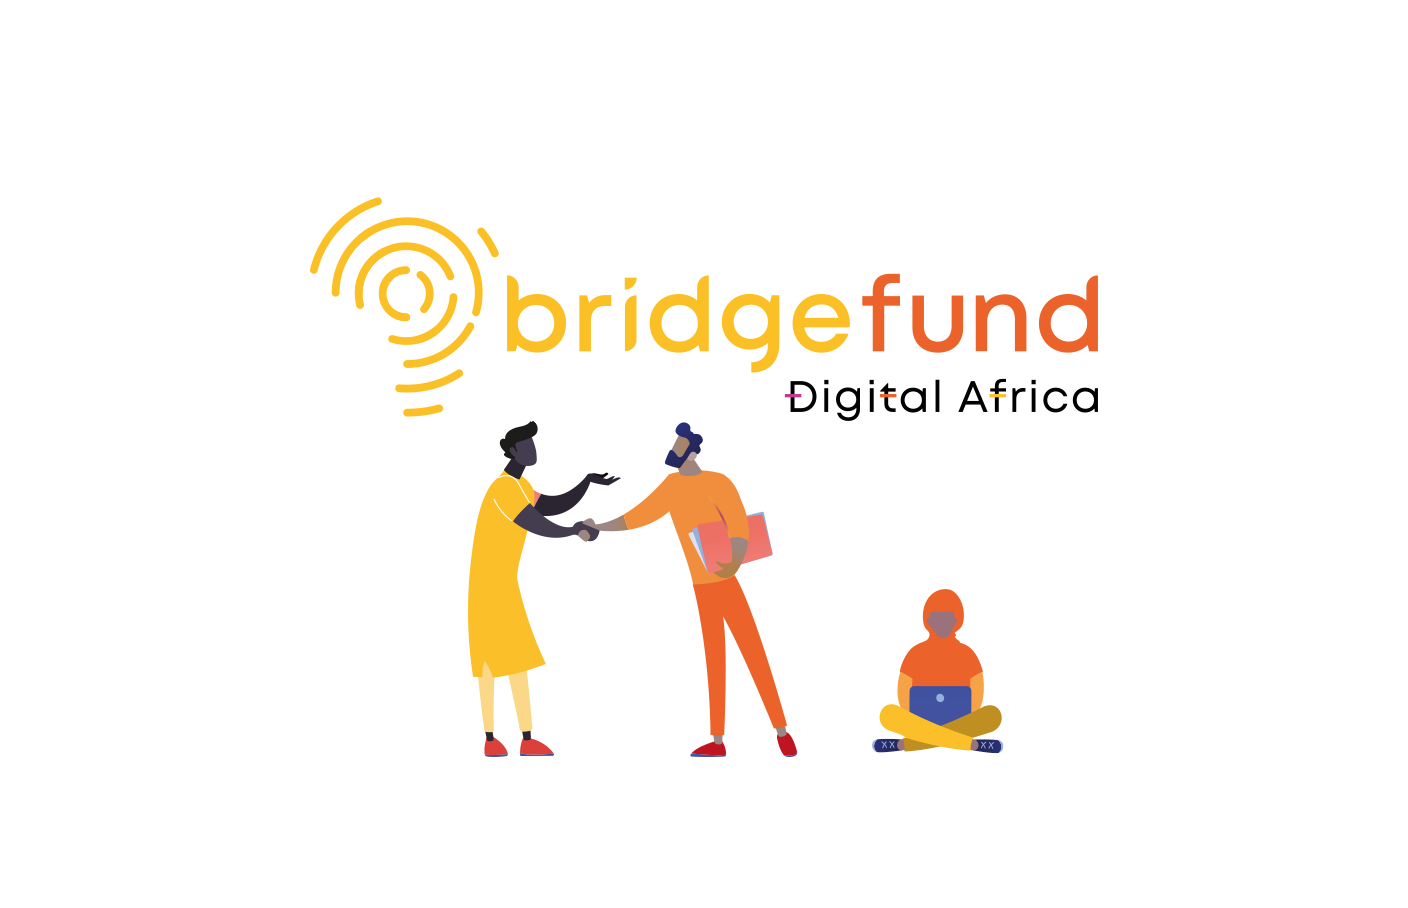 Fonds Bridge par Digital Africa et Proparco.